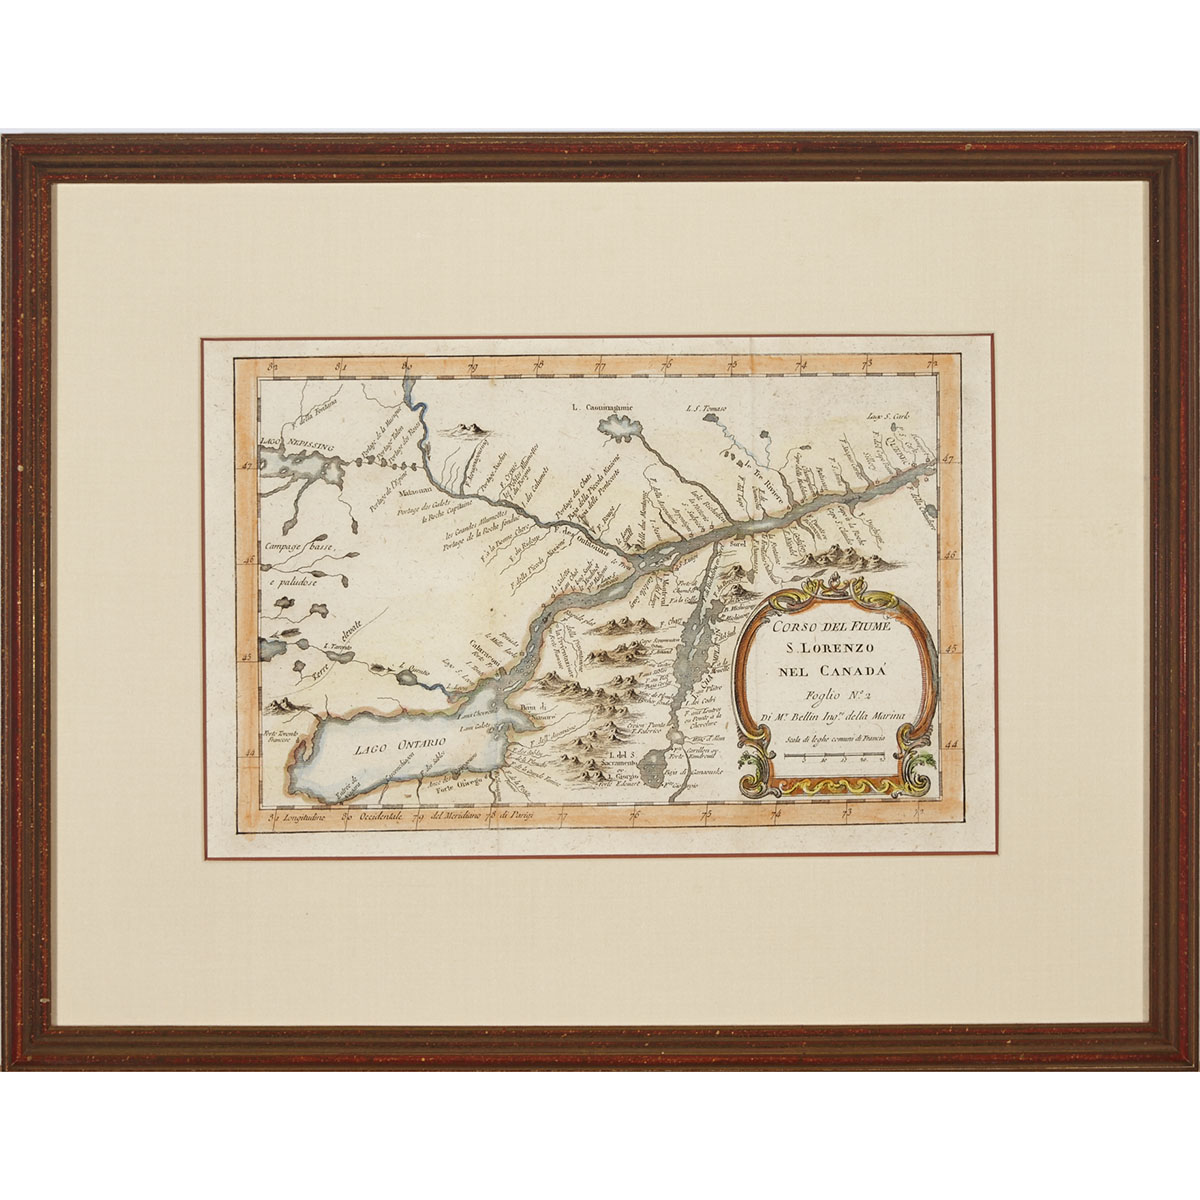 Map of the St. Lawrence River: Corso Del Fiume S. Lorenzo nel Canada, Nicholas Bellin, 